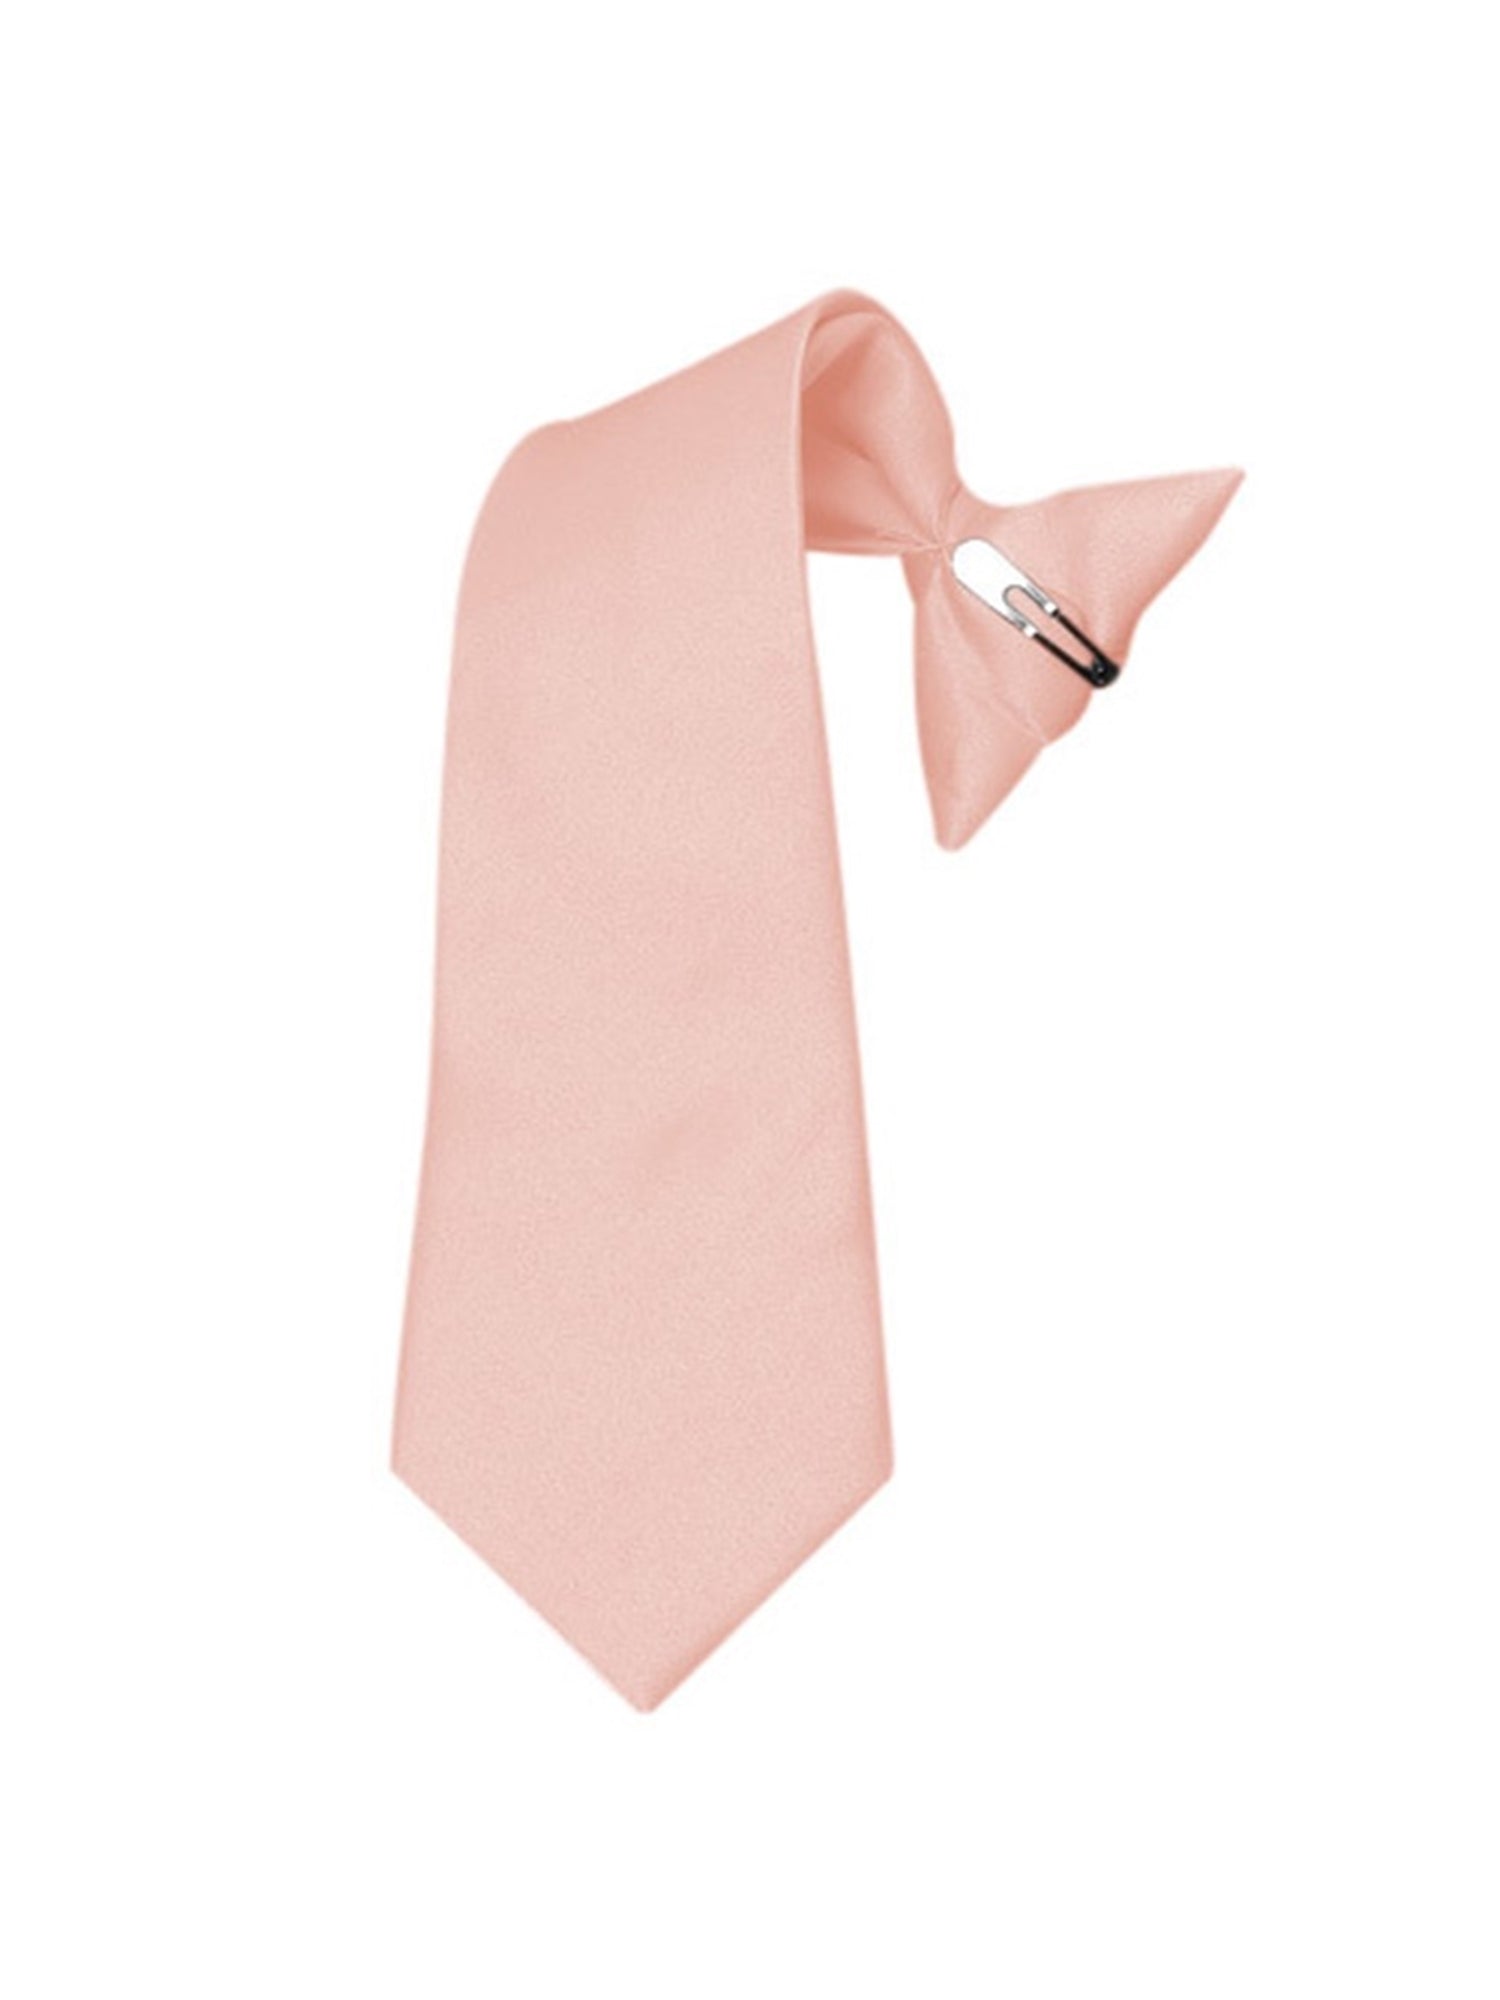 Boy's Solid Color Pre-tied Clip On Neck Tie Neck Tie TheDapperTie Pink 8" x 2.5" 